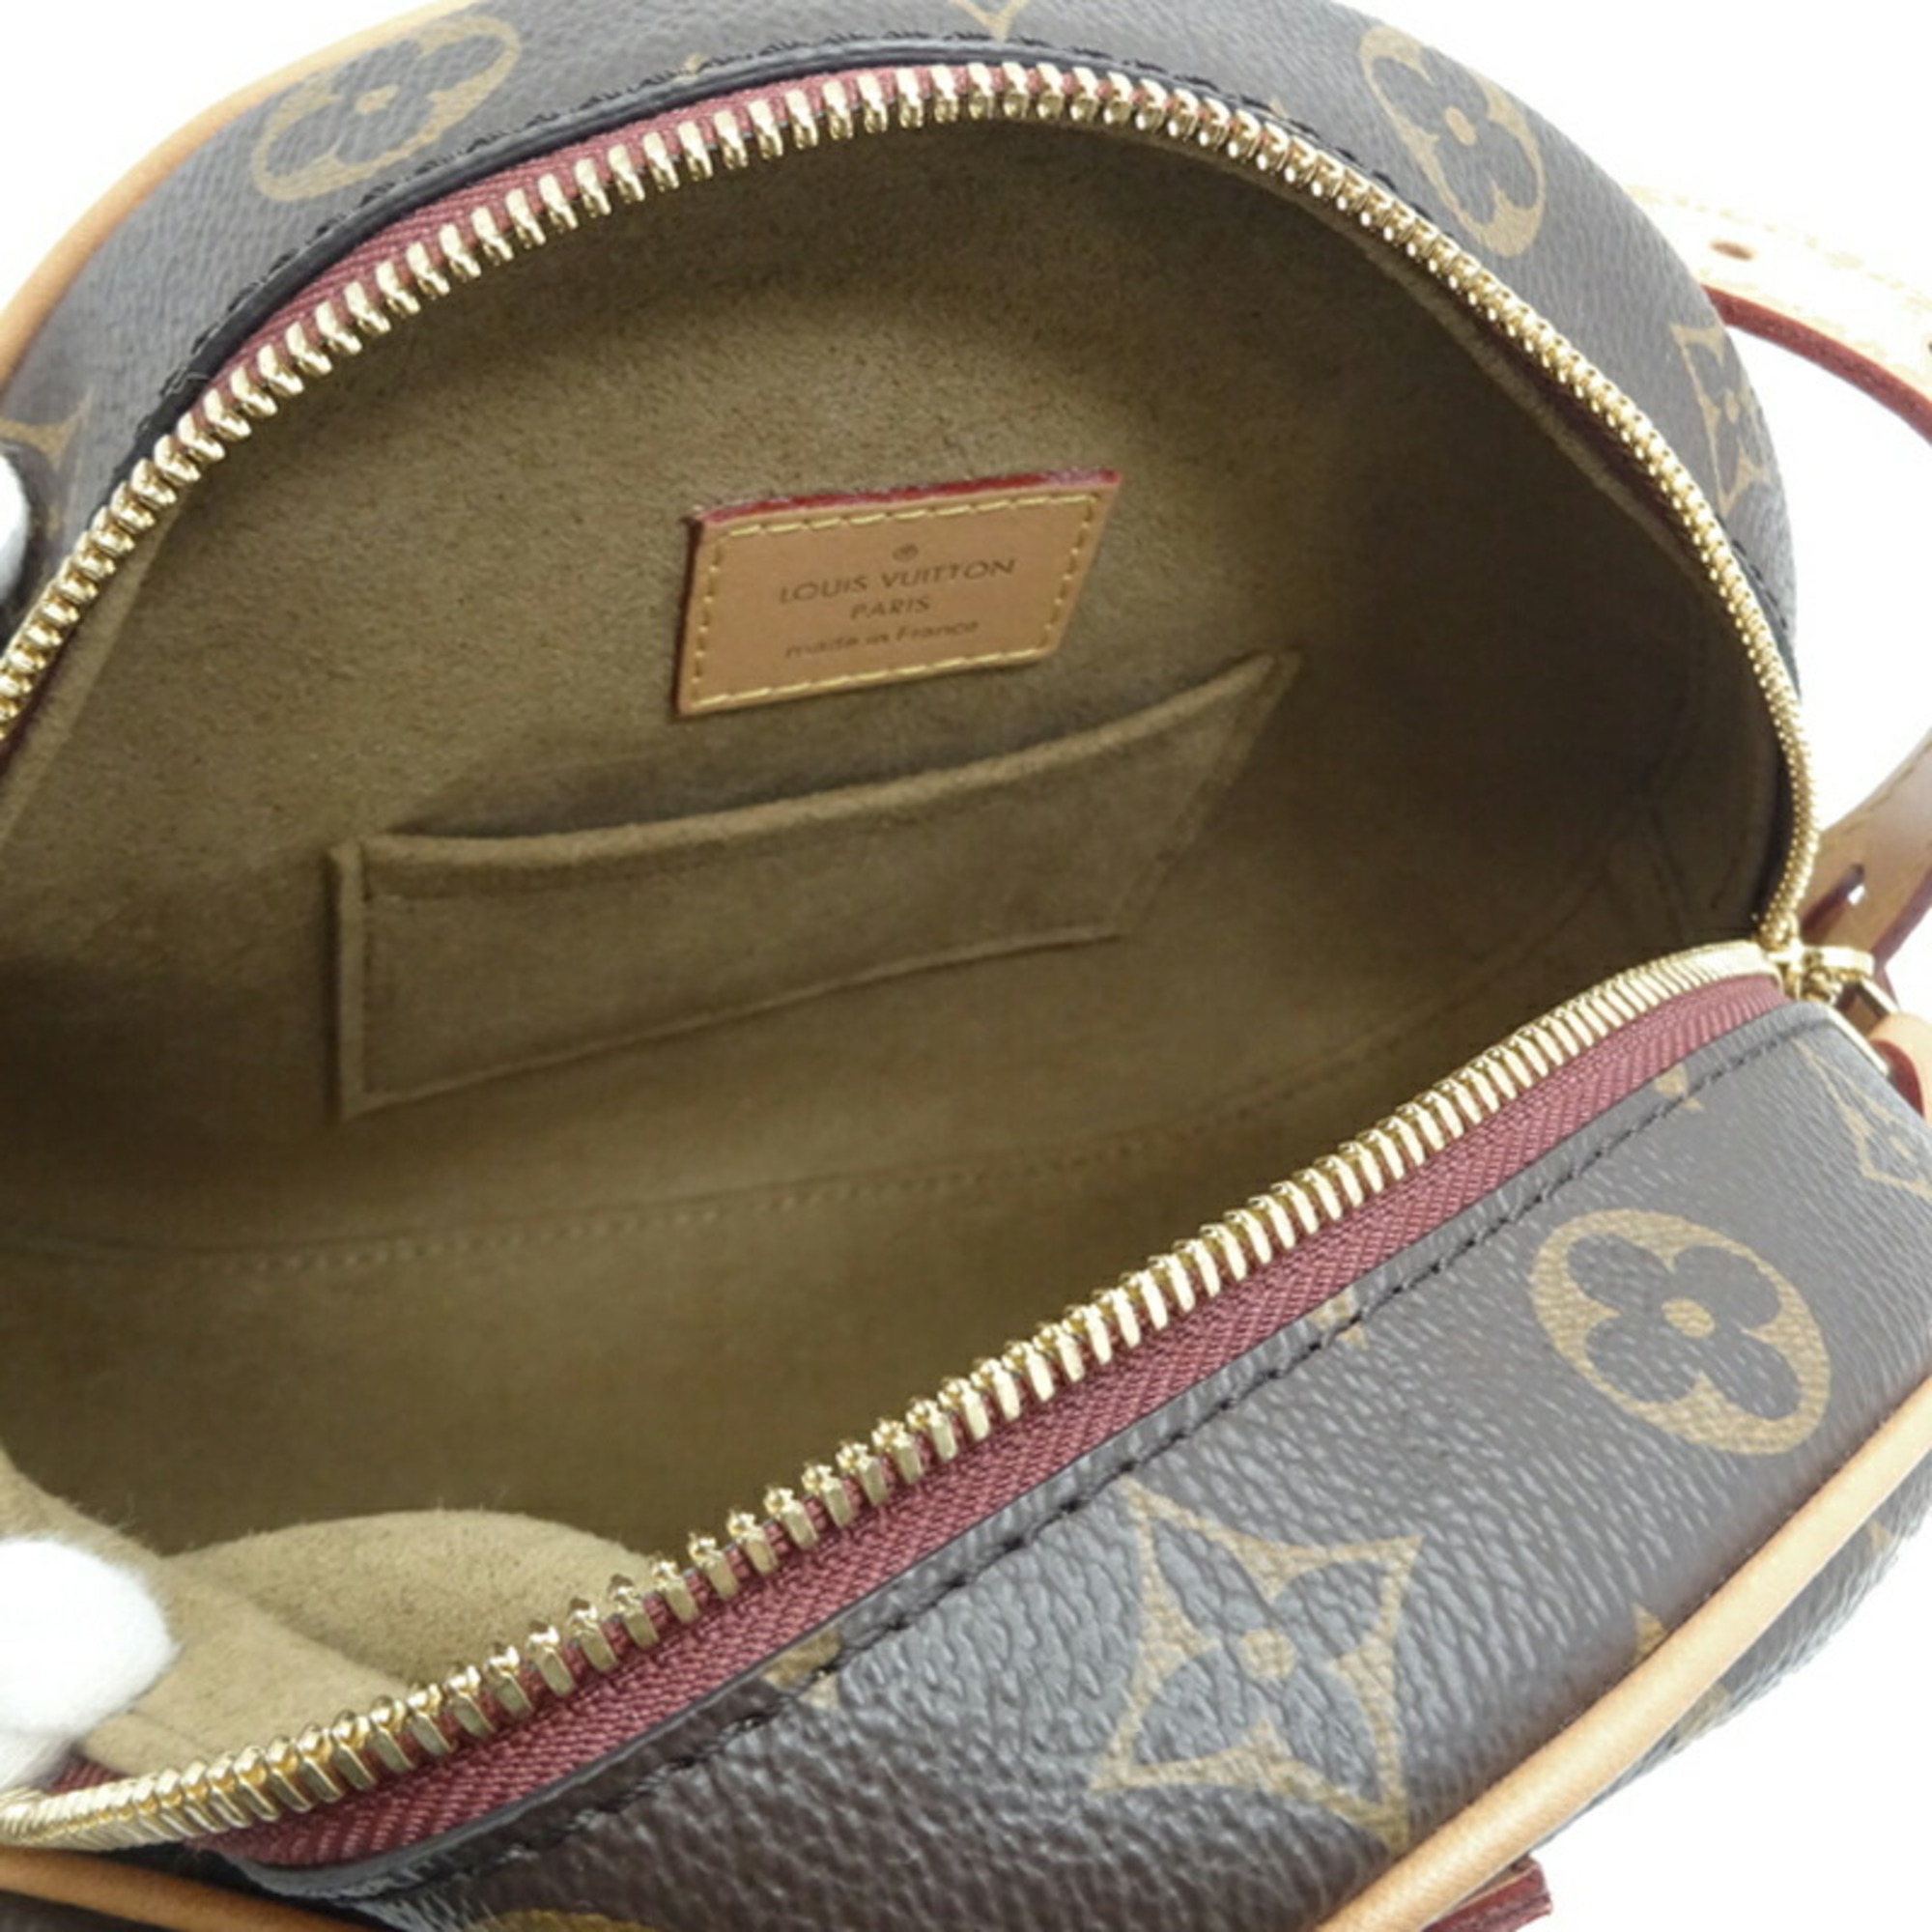 Louis Vuitton Boite Chapeau Souple Women's Shoulder Bag M52294 Monogram Brown